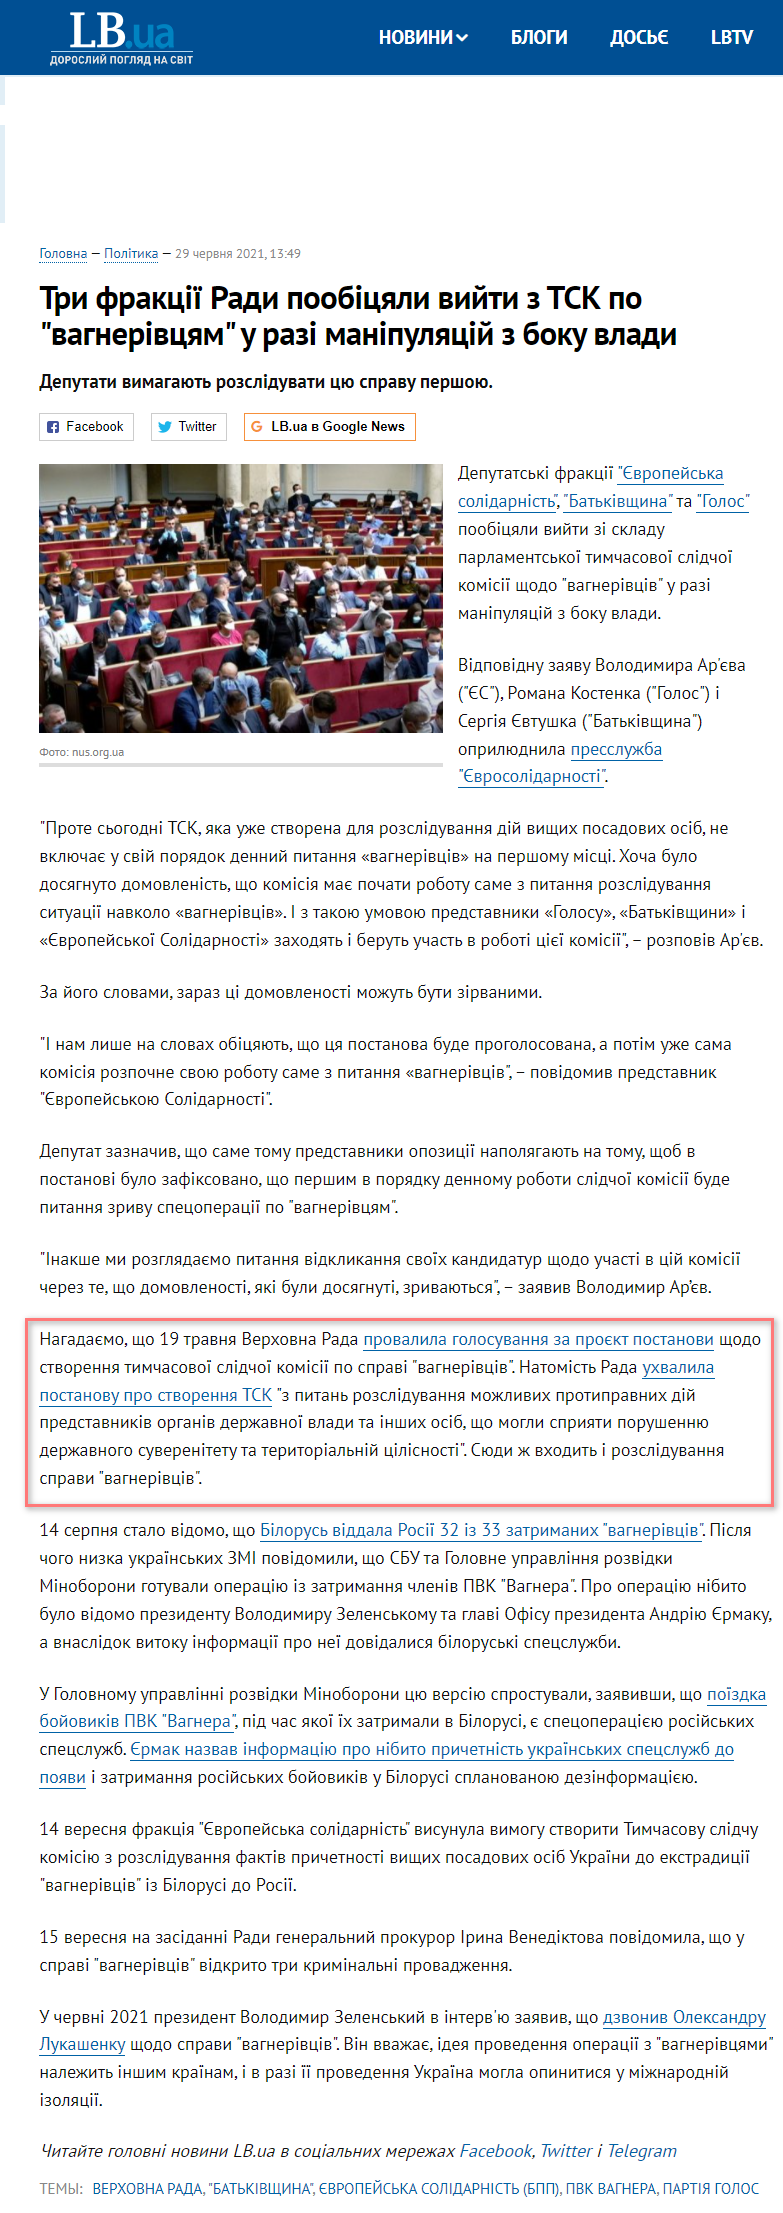 https://lb.ua/news/2021/06/29/488114_tri_fraktsii_radi_poobitsyali_viyti_z_tsk.html